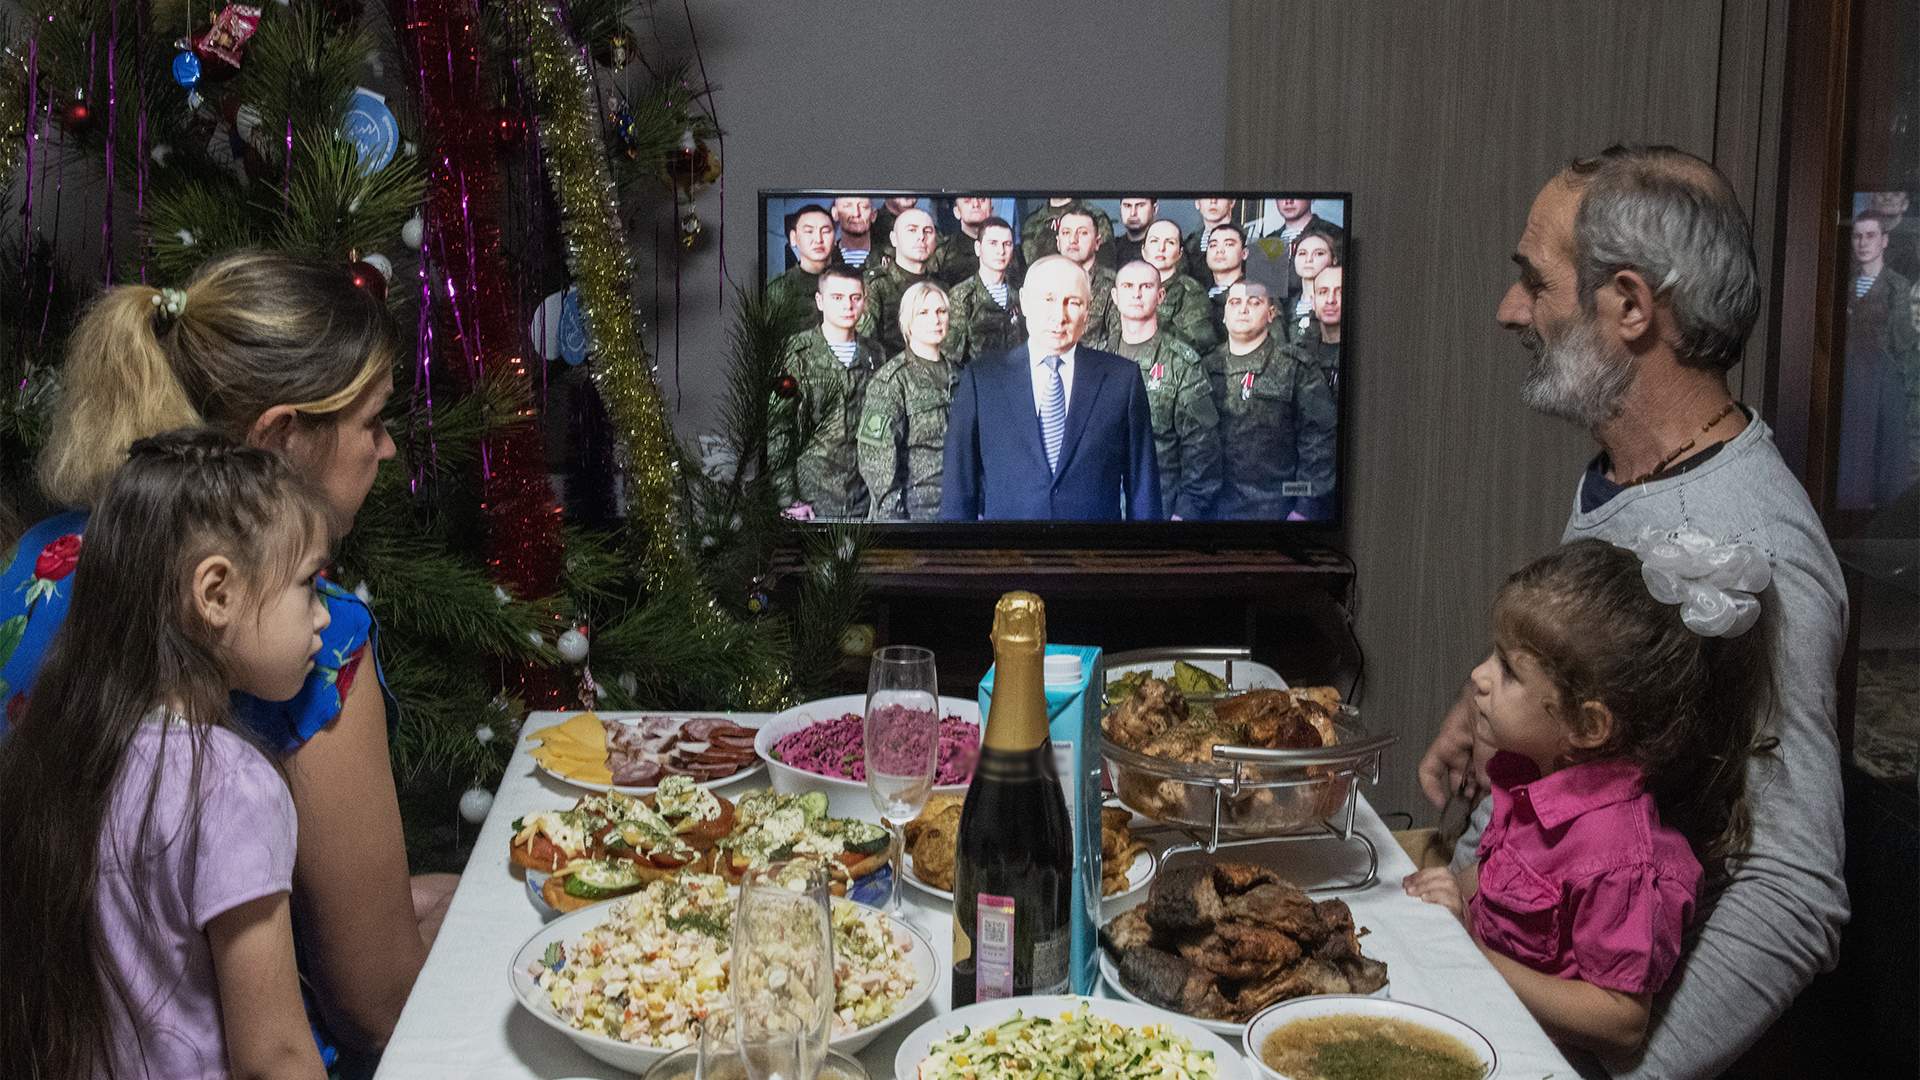 Новогоднее обращение президента России: где и когда смотреть — какие каналы покажут